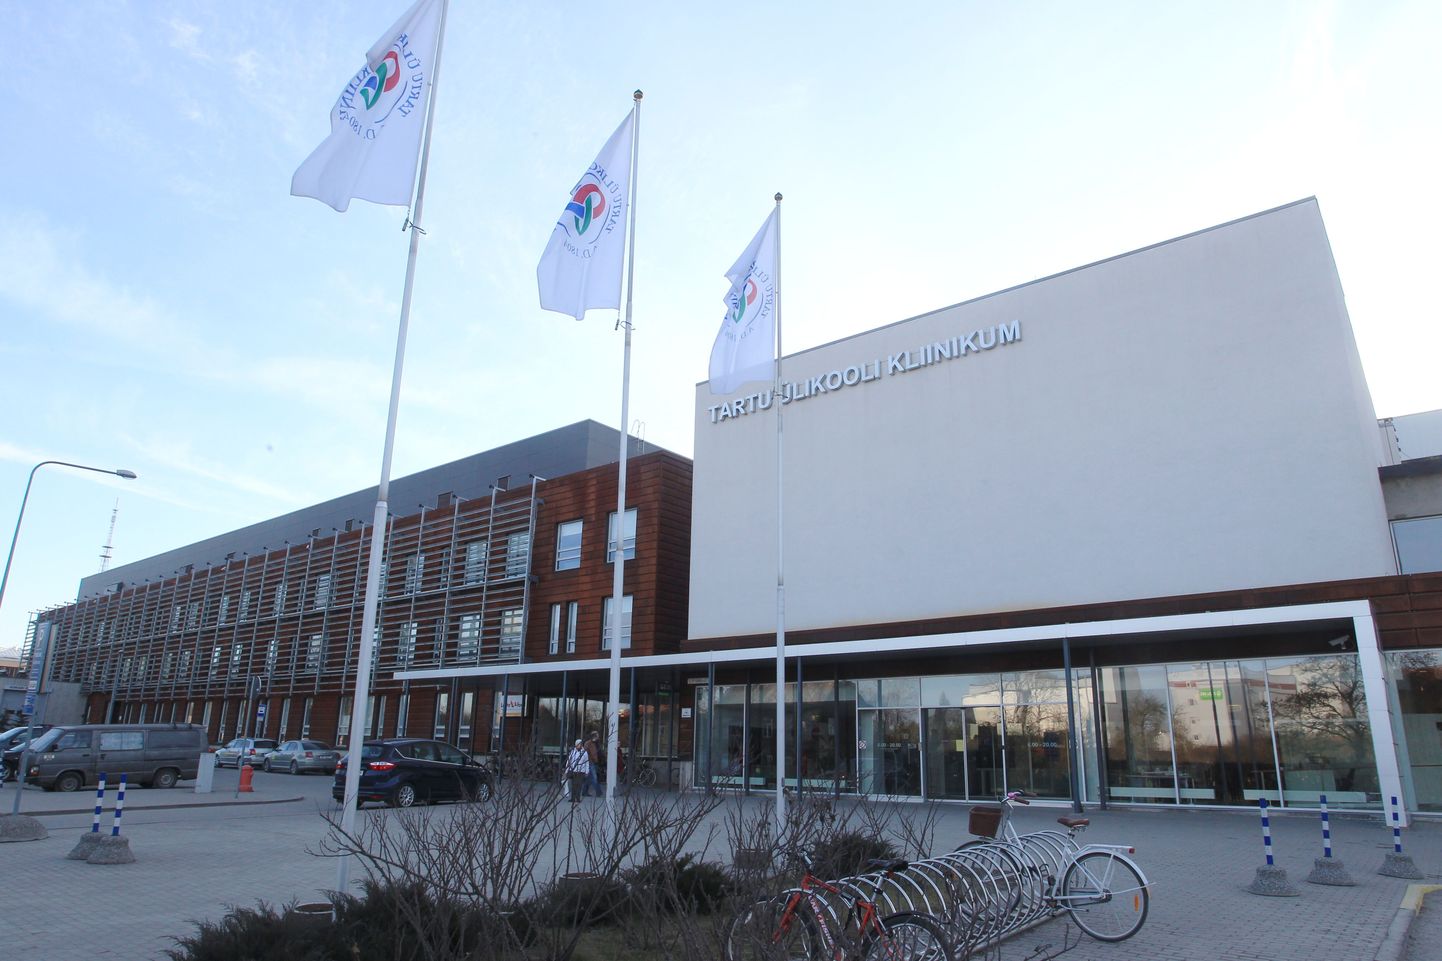 Tartu ülikooli kliinikum on Põhja-Eesti regionaalhaigla kõrval teine Eesti suurhaigla.